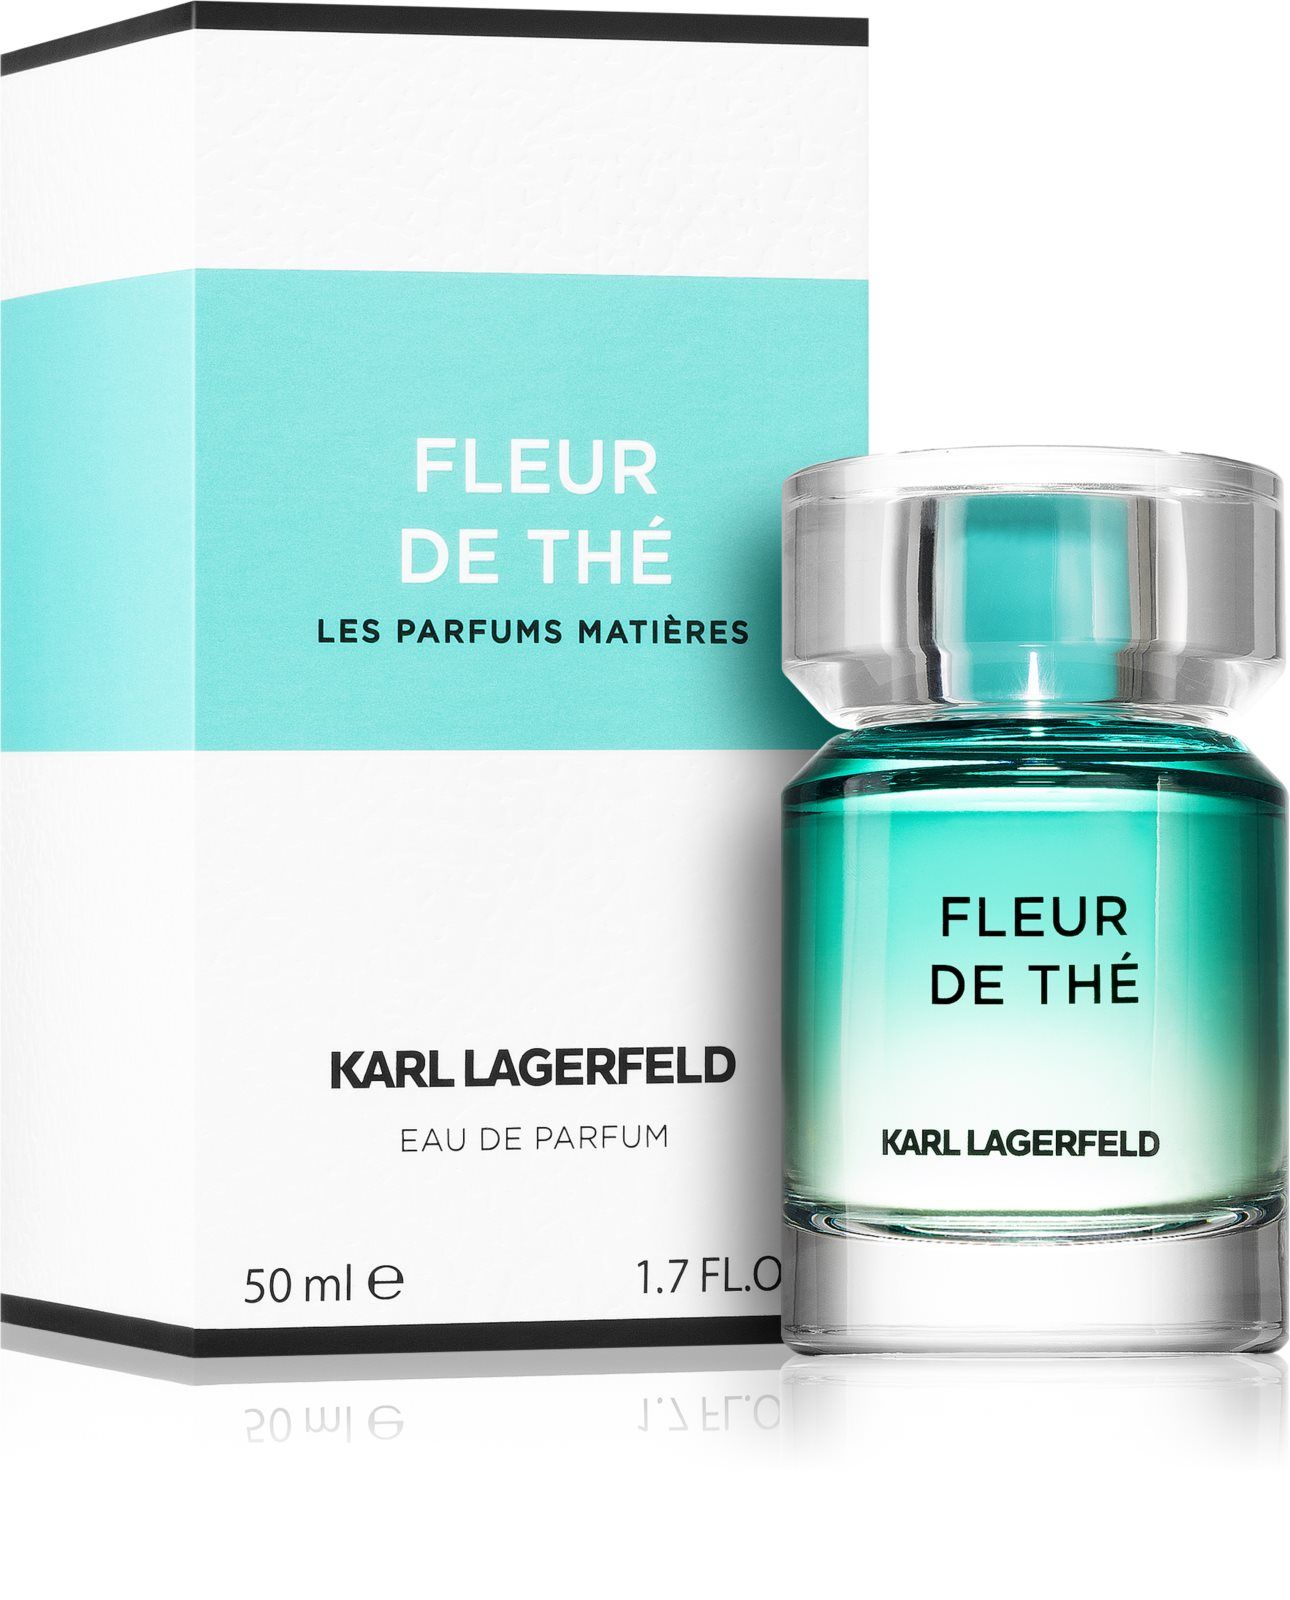 Флер де зе. Karl Lagerfeld fleur de the парфюмерная вода 50 мл. Karl Lagerfeld парфюмерная вода fleur de the 100 мл вода парфюмерная. Fleur de the Karl Lagerfeld описание.